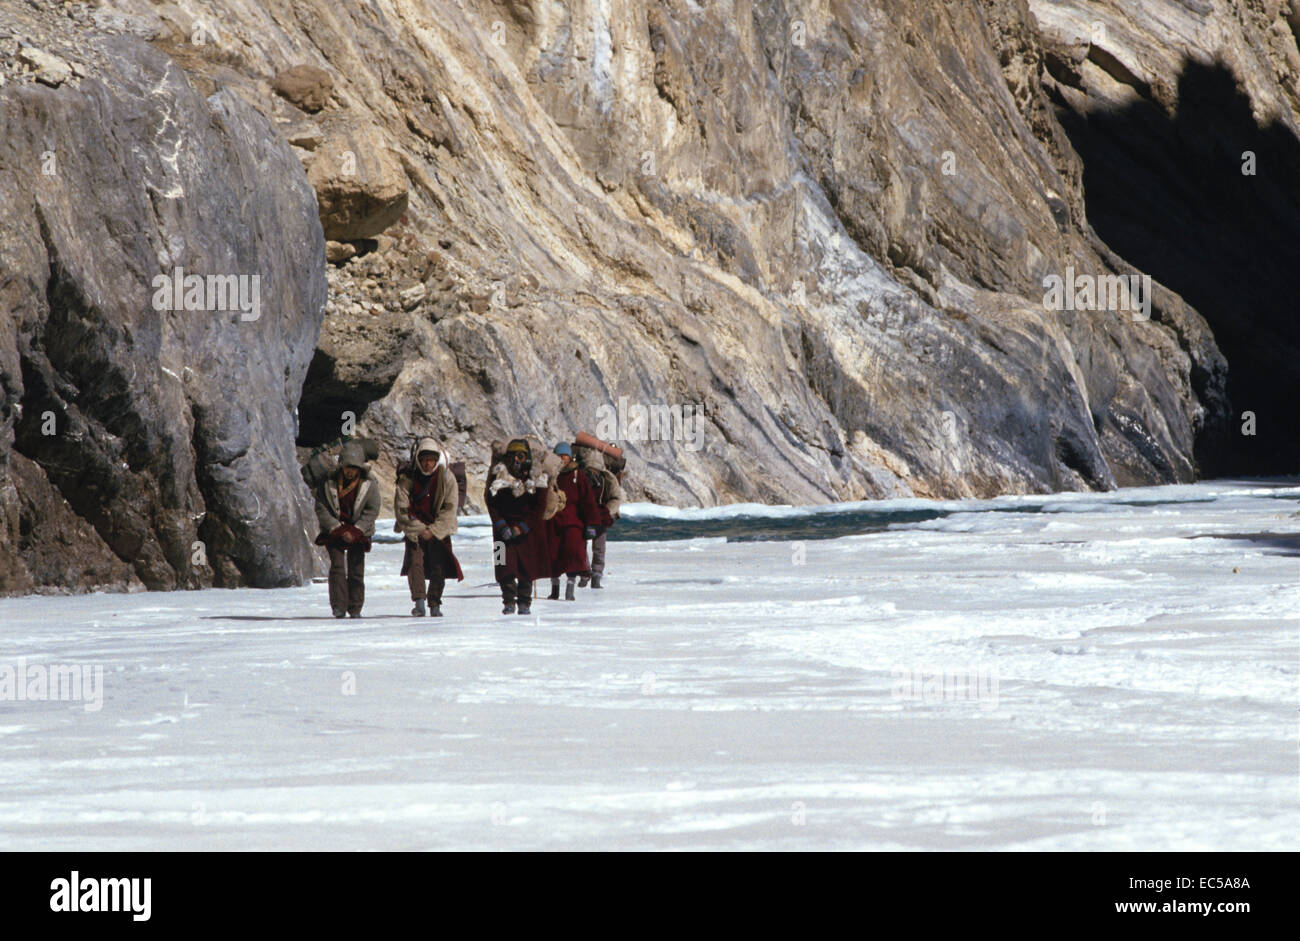 Ladakh sul fiume di ghiaccio. Una spedizione attraversa il ghiaccio. Regione montagnosa. Le figure a piedi in una linea. Foto Stock